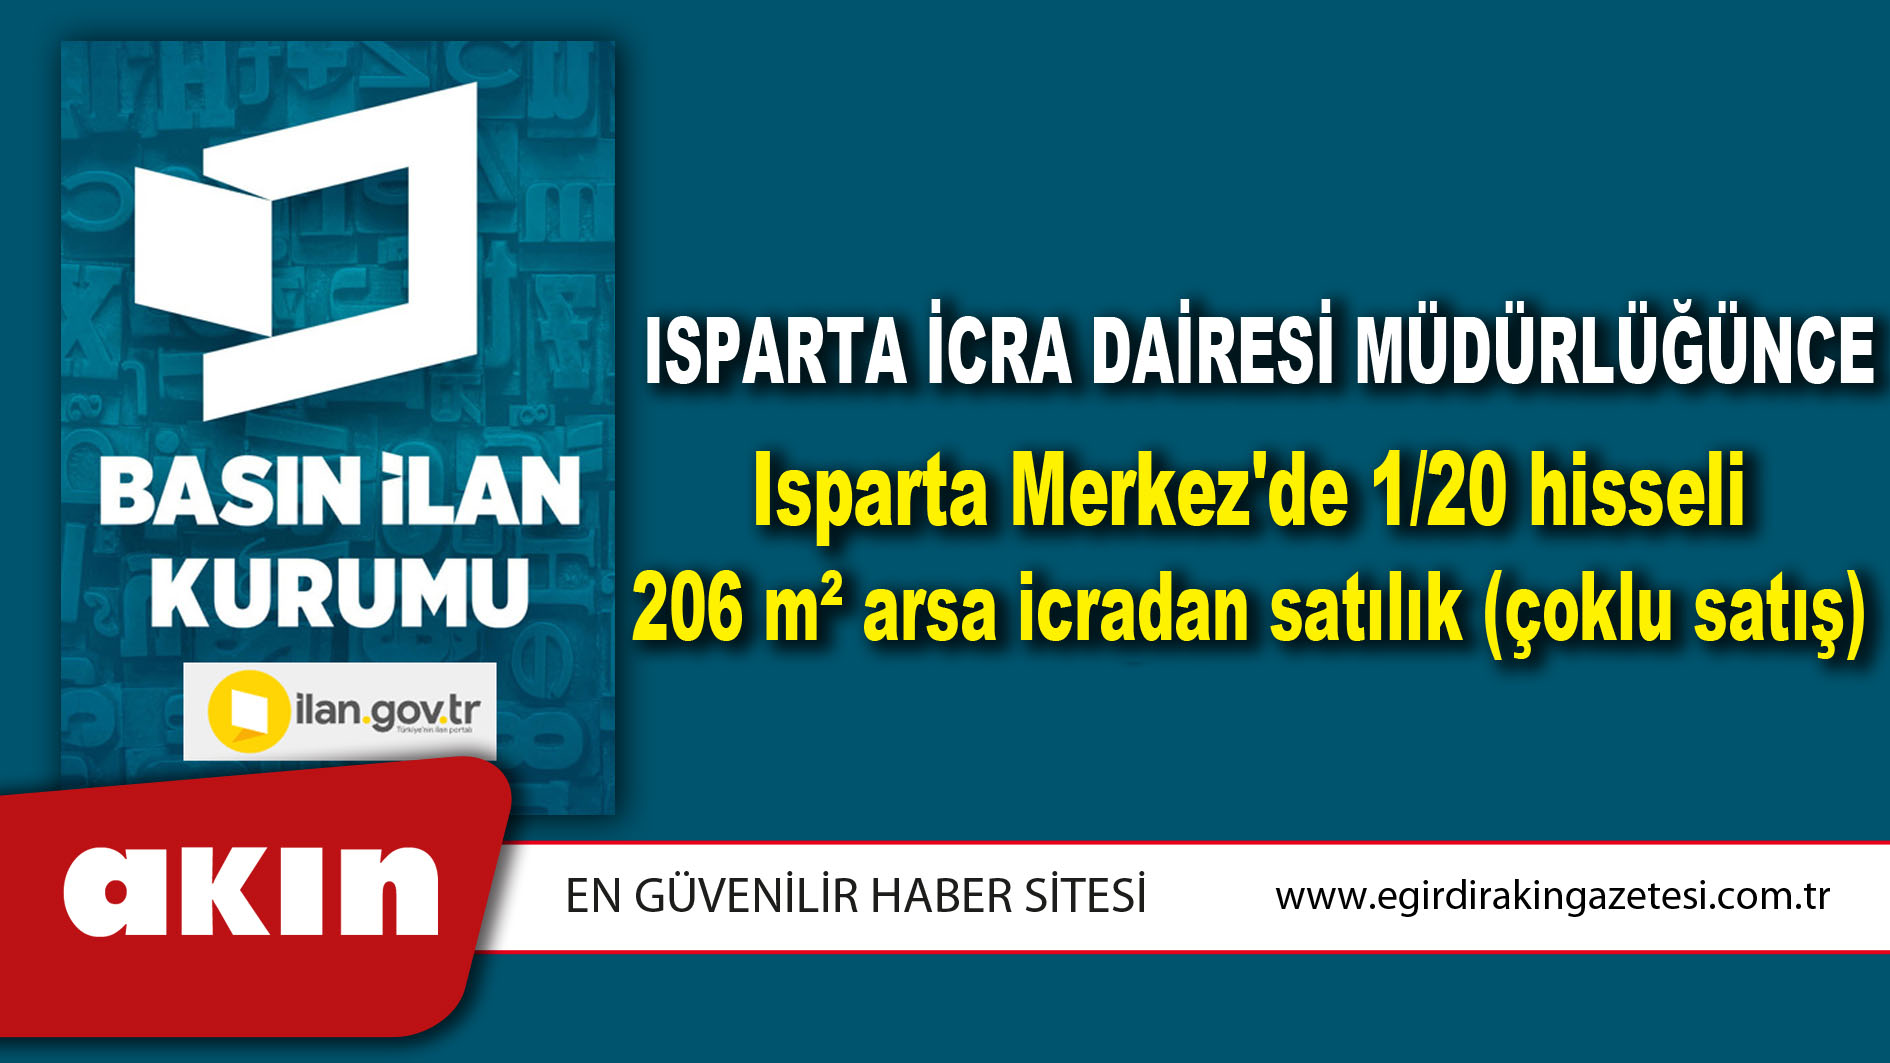 Isparta İcra Dairesi Müdürlüğünce Isparta Merkez'de 1/20 hisseli 206 m² arsa icradan satılık (çoklu satış)